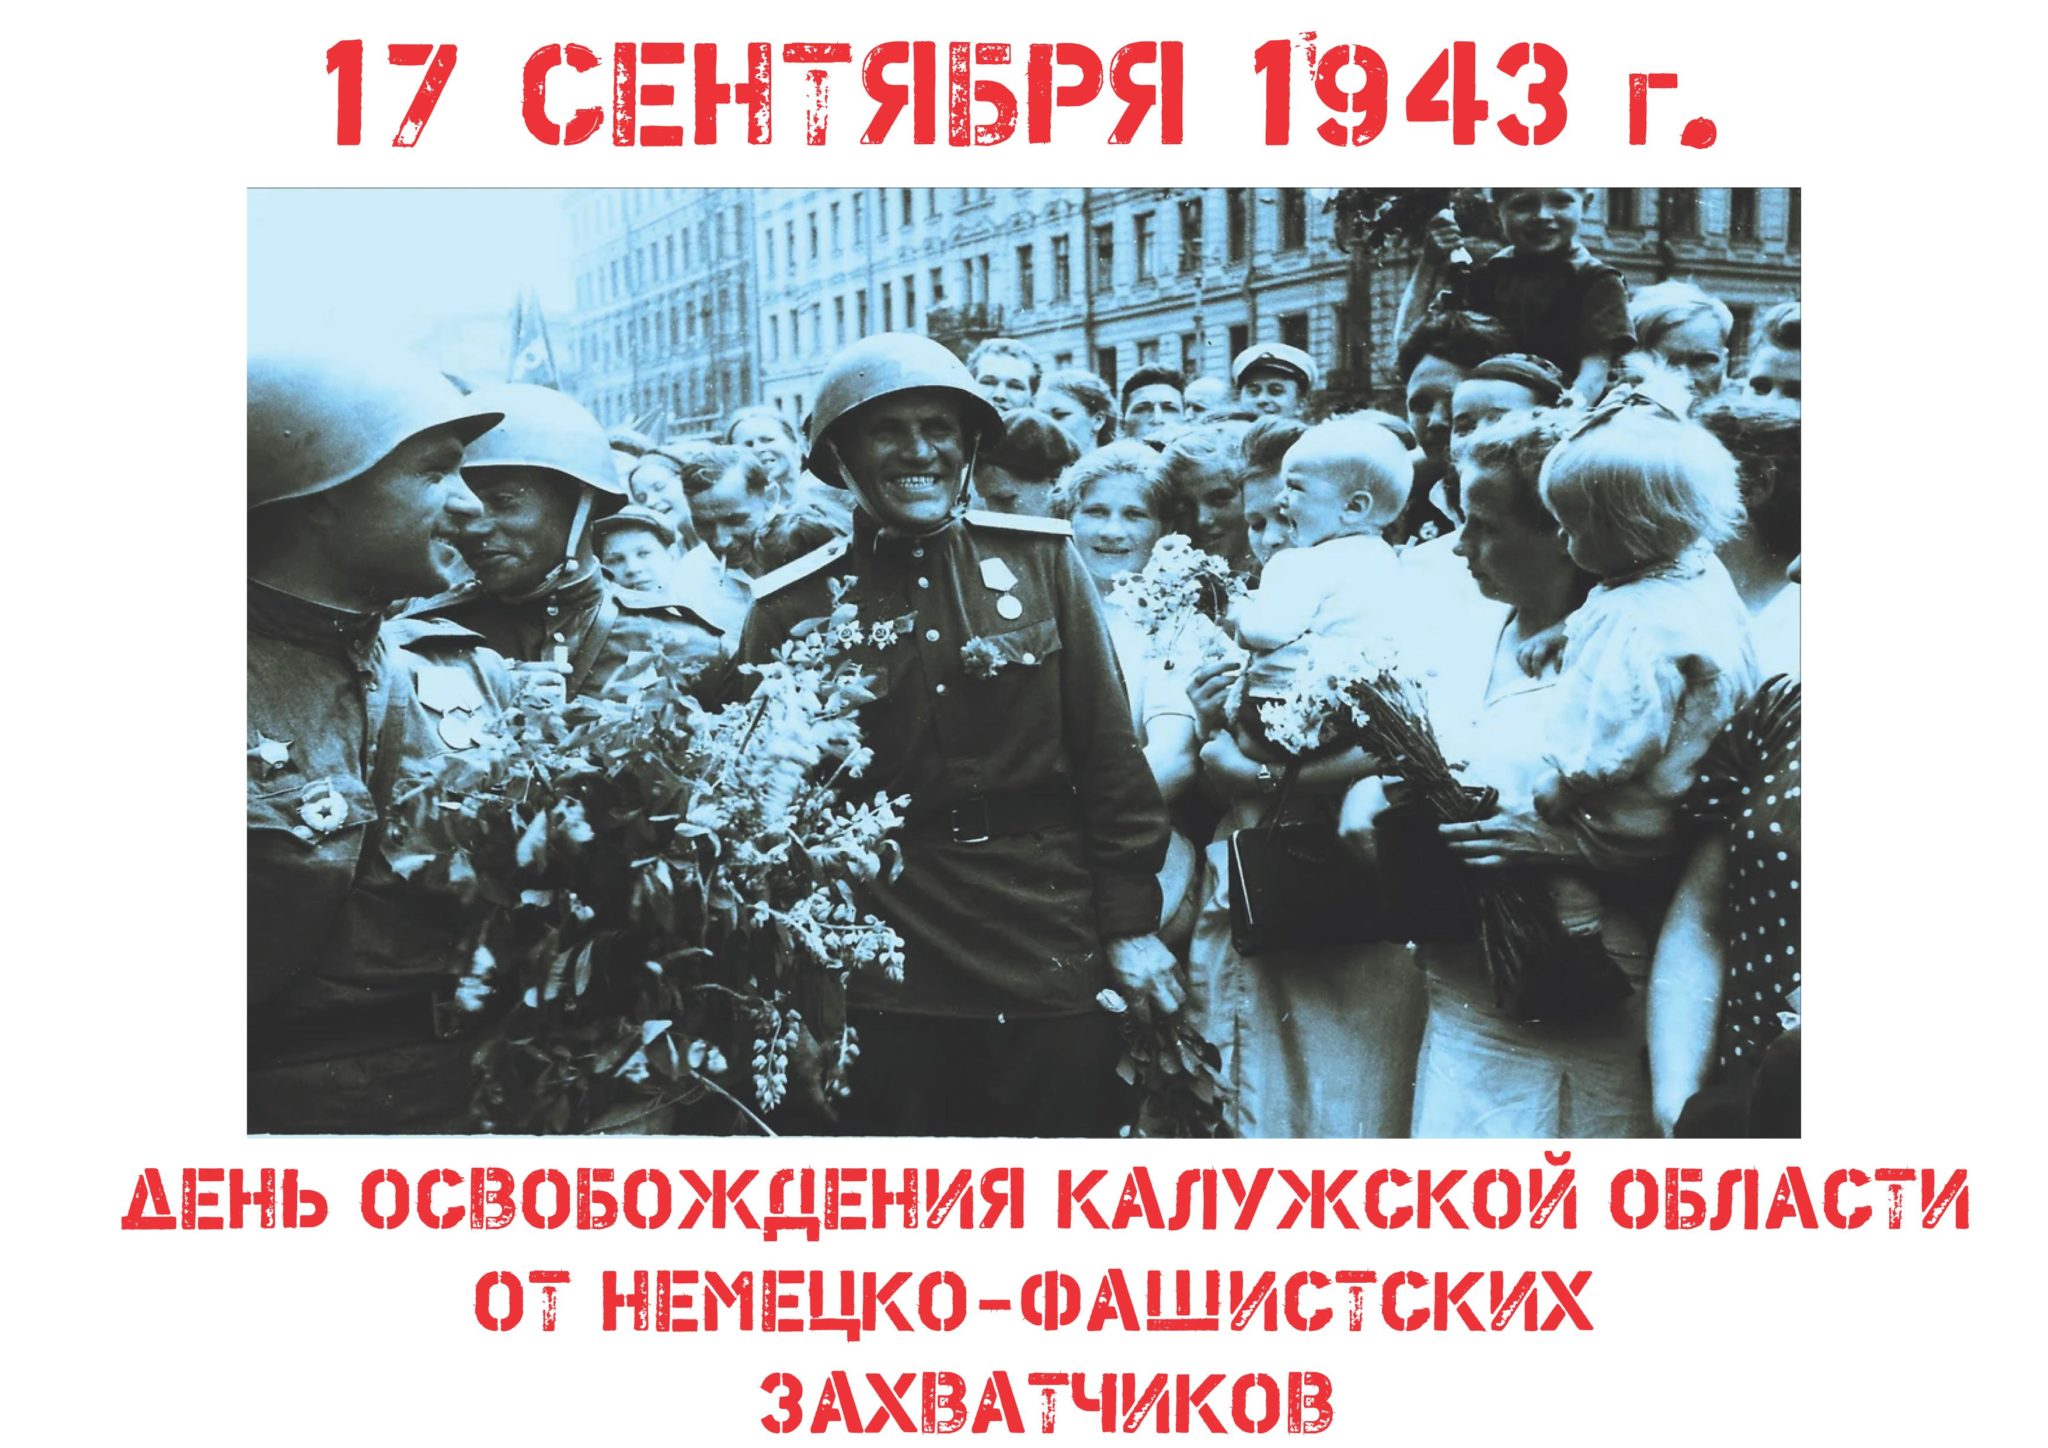 17 сентября - День освобождения Калужской области от немецко-фашистских захватчиков